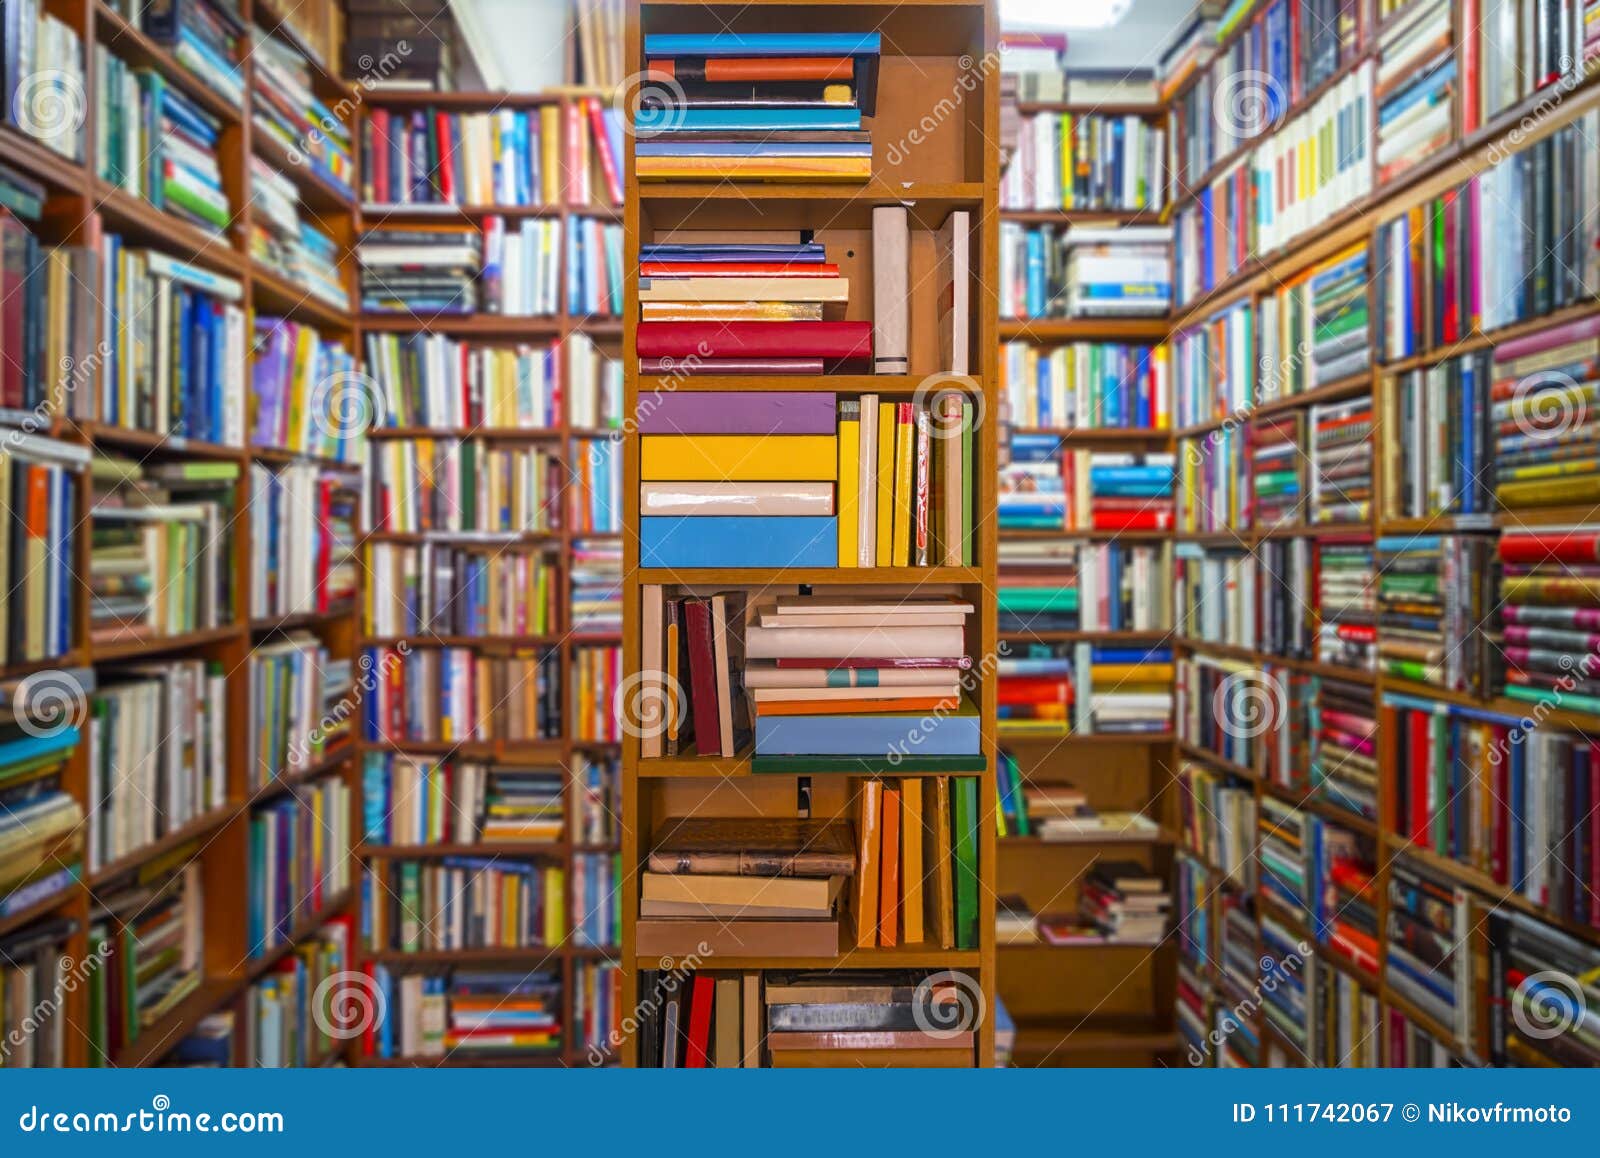 La photo d'une salle de librairie a rempli des livres